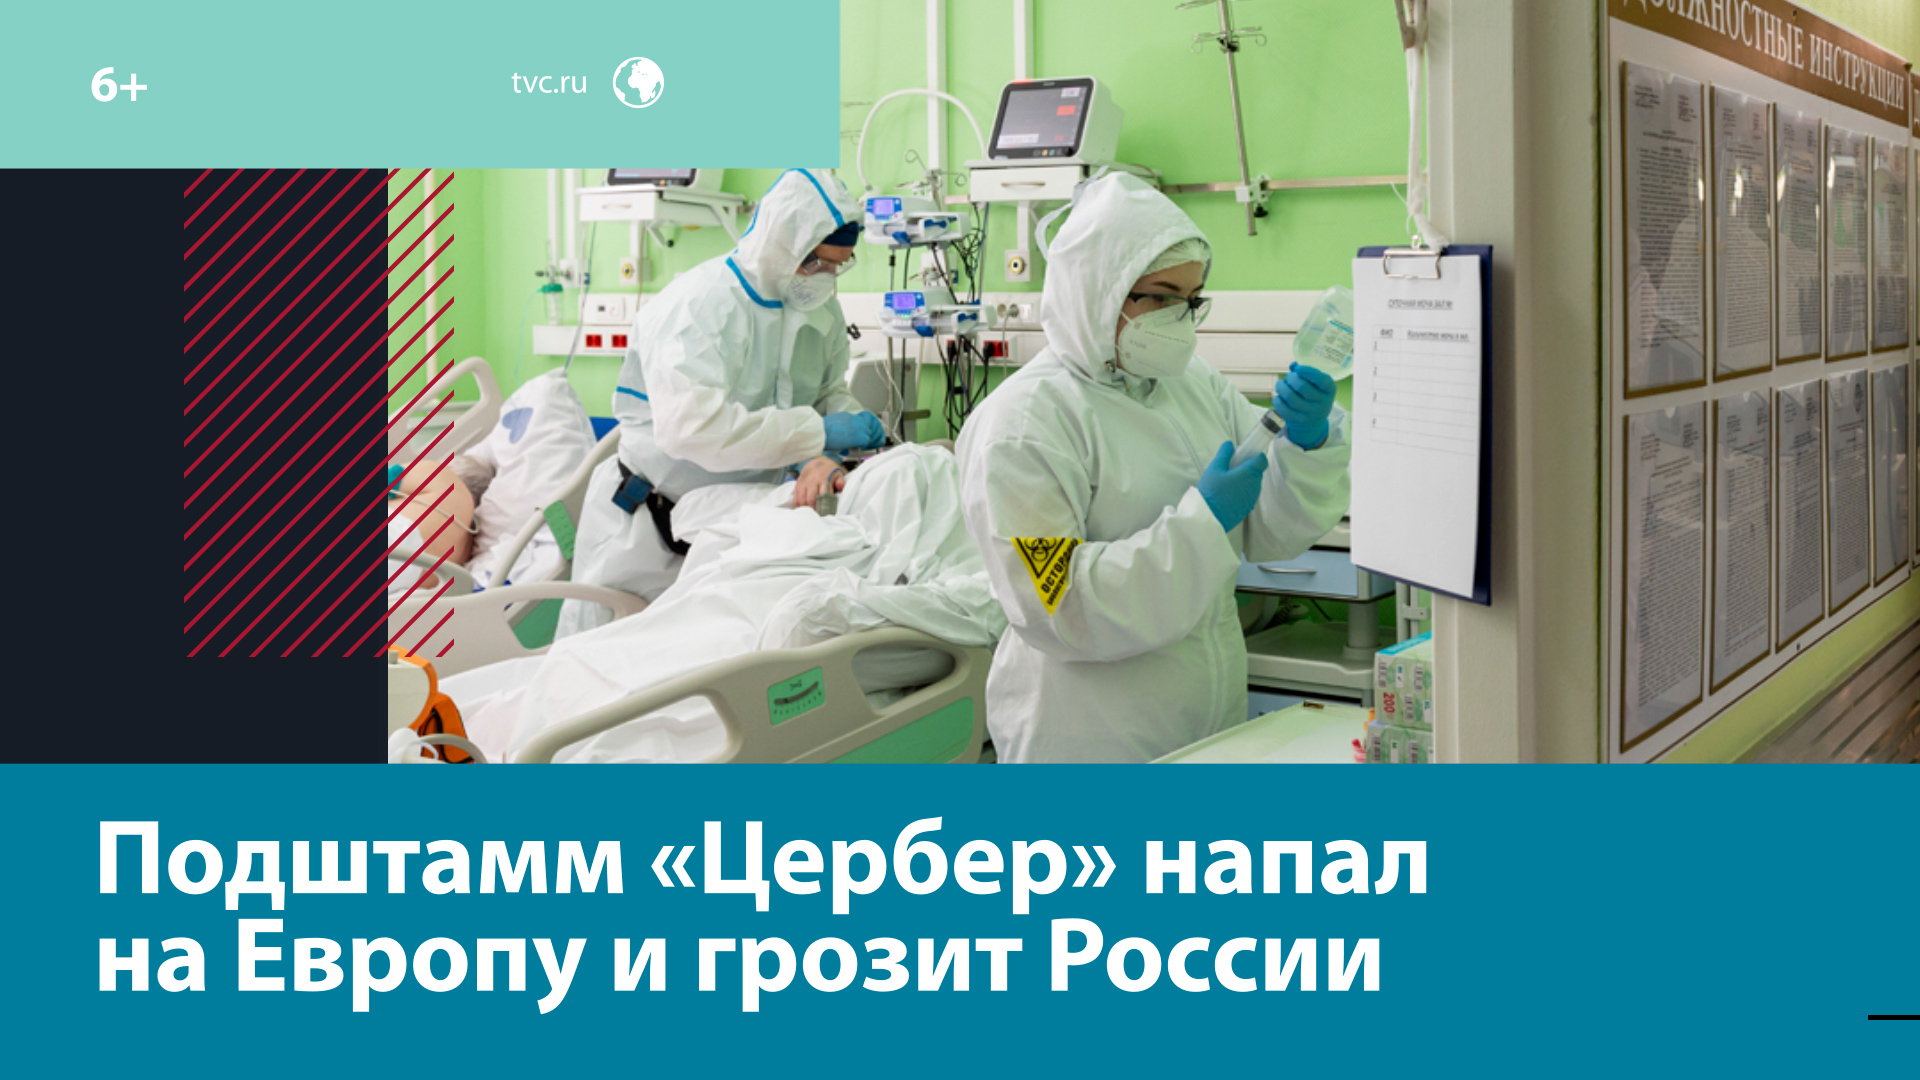 Грозит ли нам новая вспышка коронавируса? – Москва FM